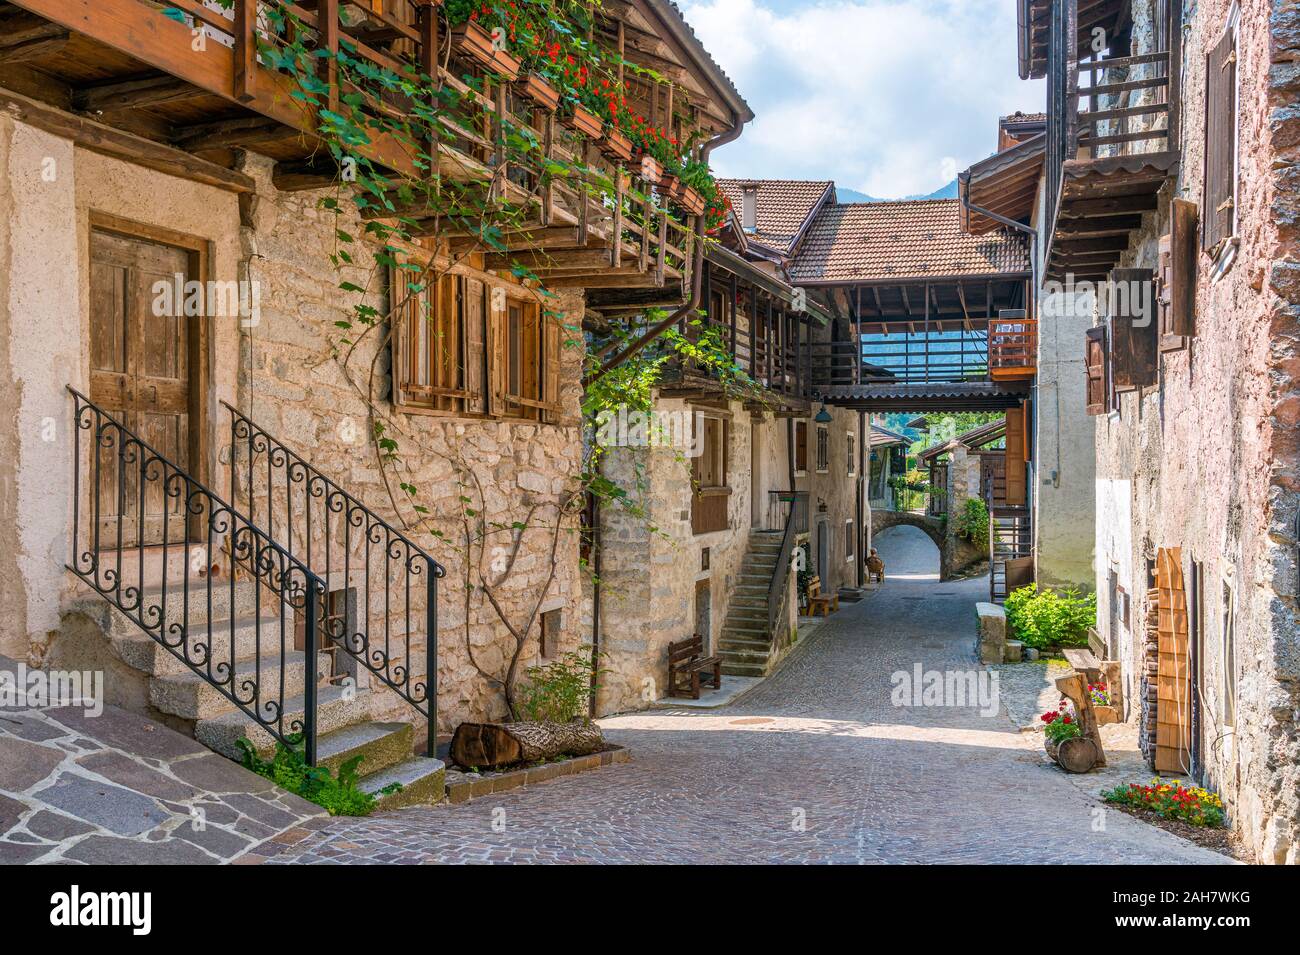 Le village pittoresque de Rango, dans la province de Trente, Trentin-Haut-Adige, Italie. Banque D'Images